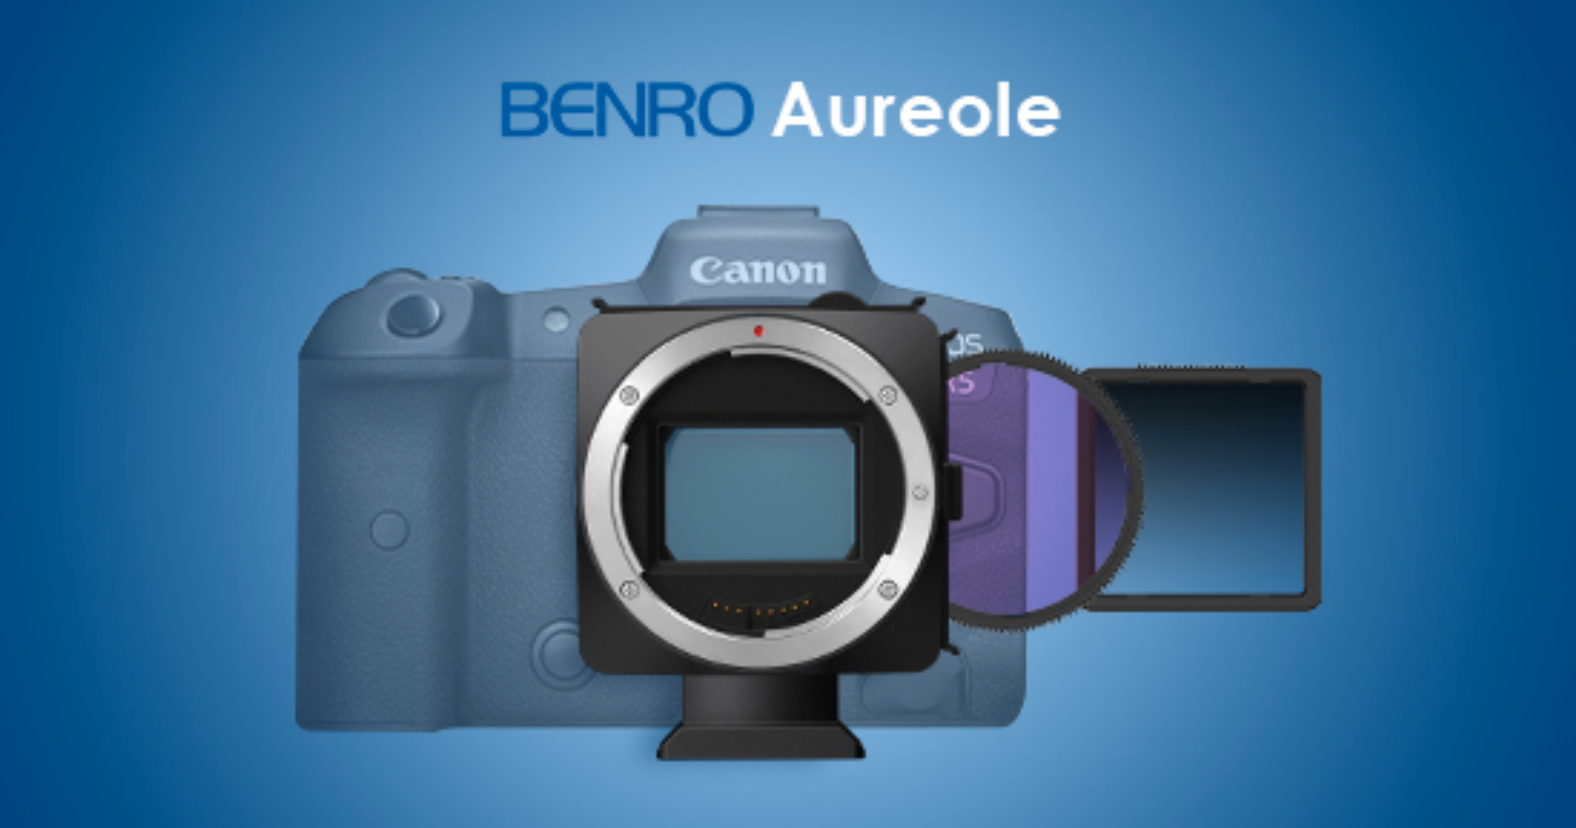 Benro Aureole ビデオフィルター ランドスケープキット (RF EF)